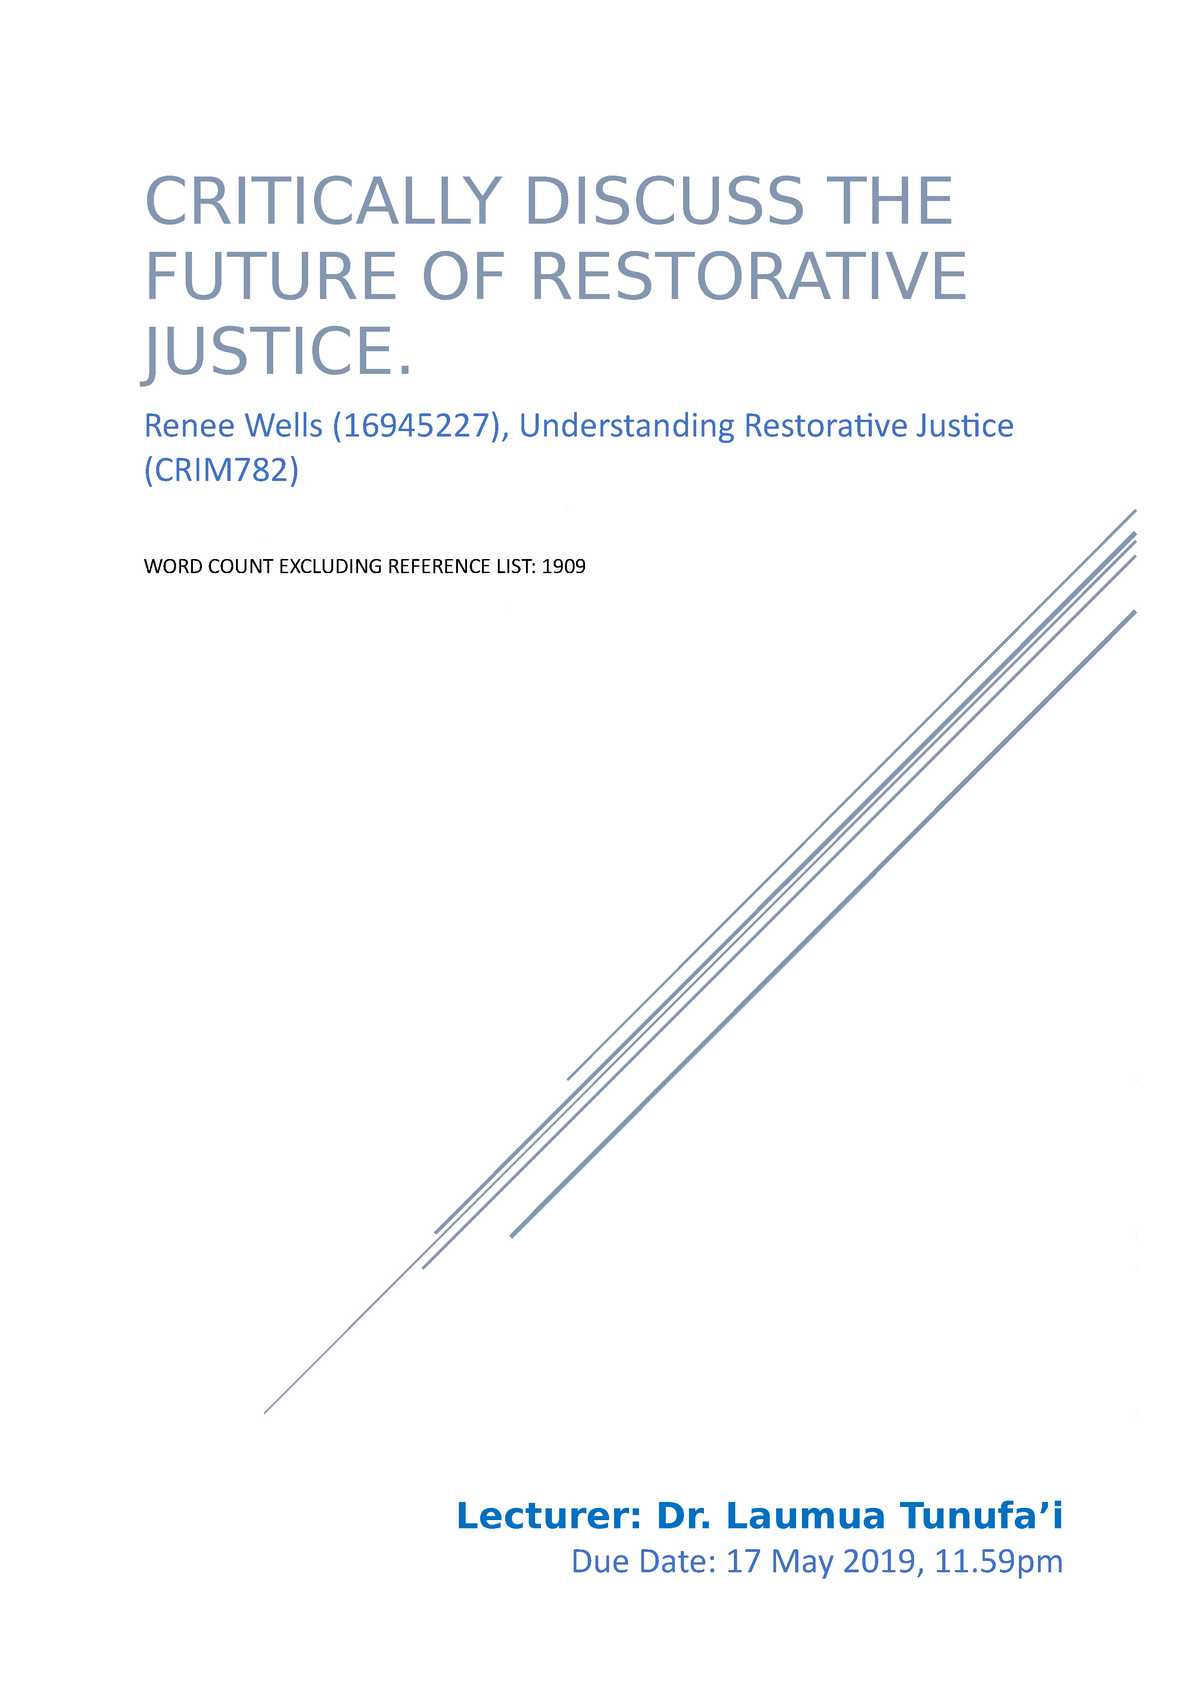 restorative justice essay topics